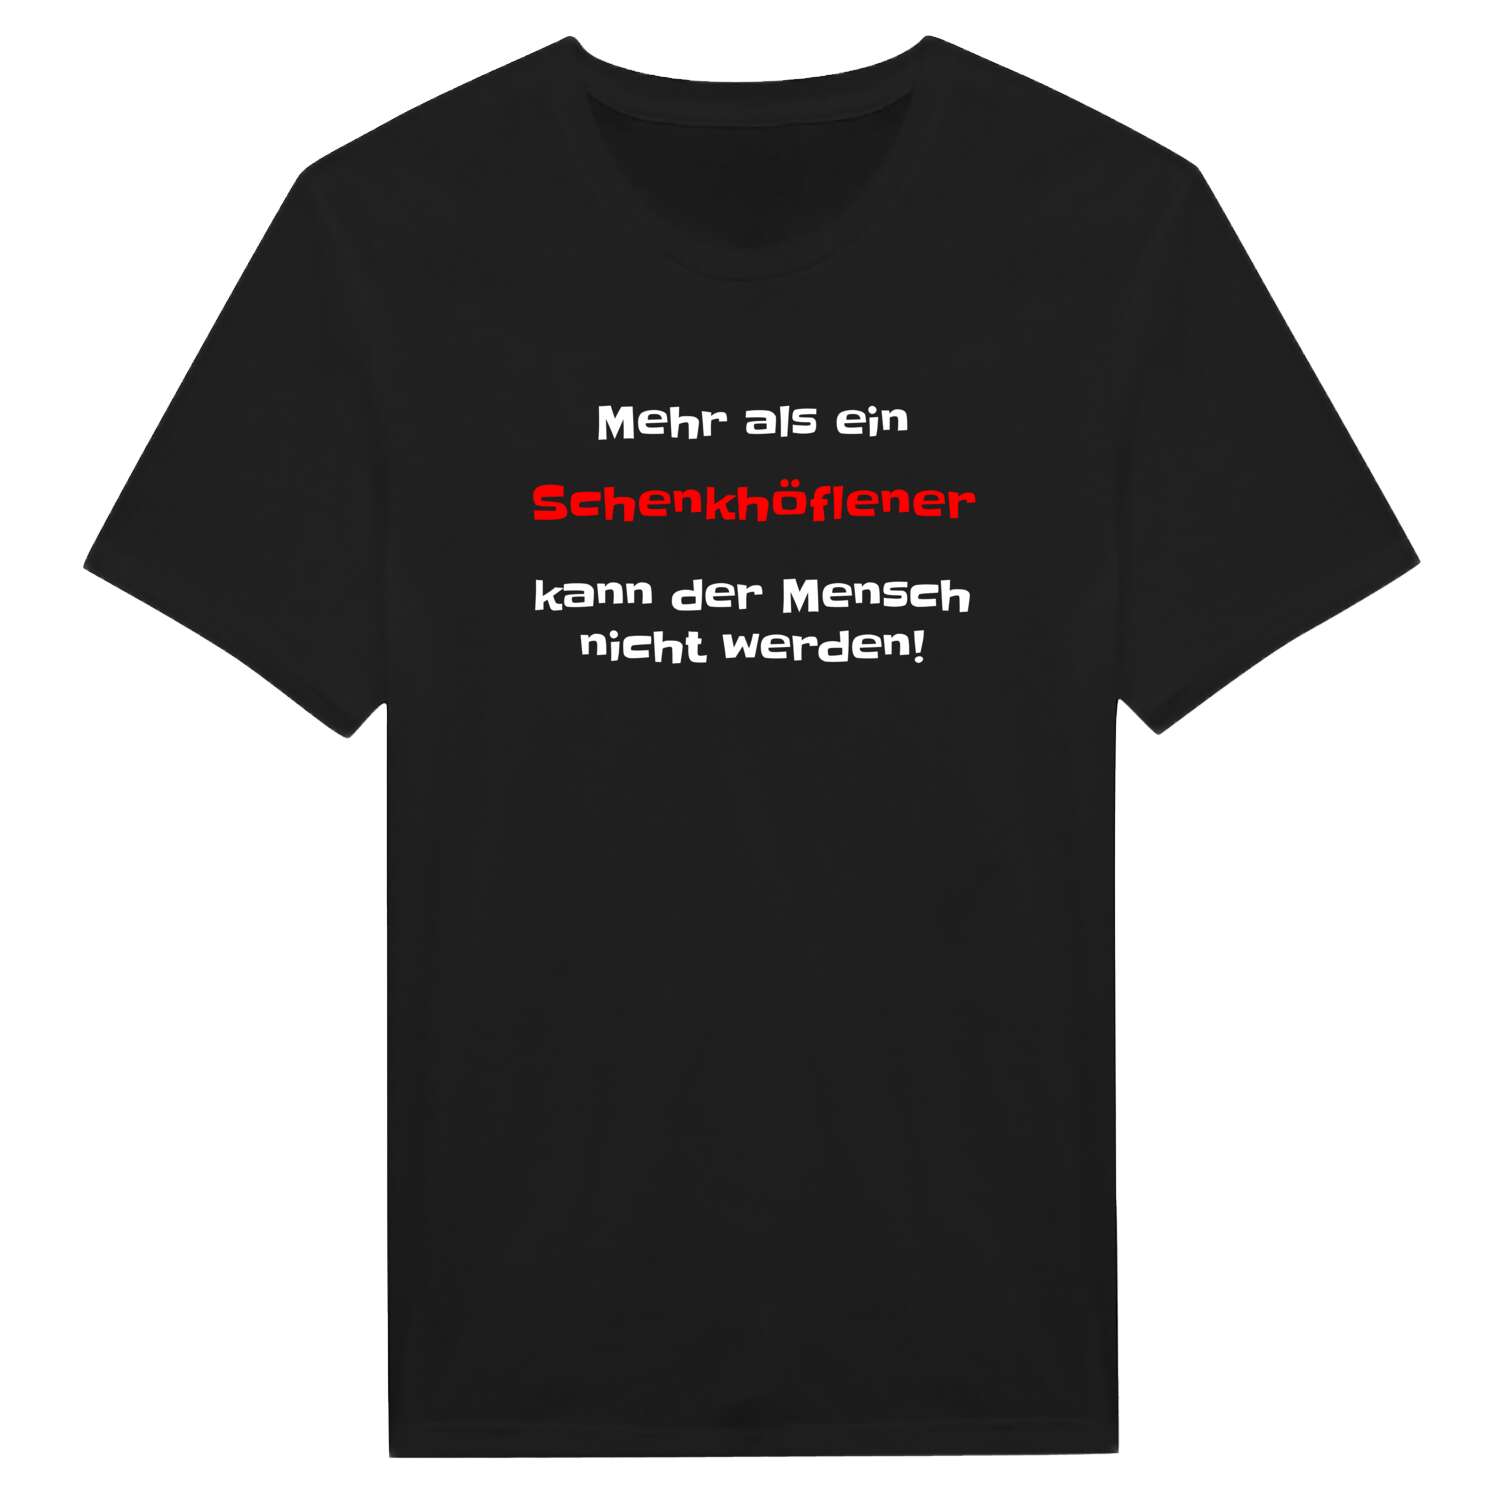 Schenkhöfle T-Shirt »Mehr als ein«